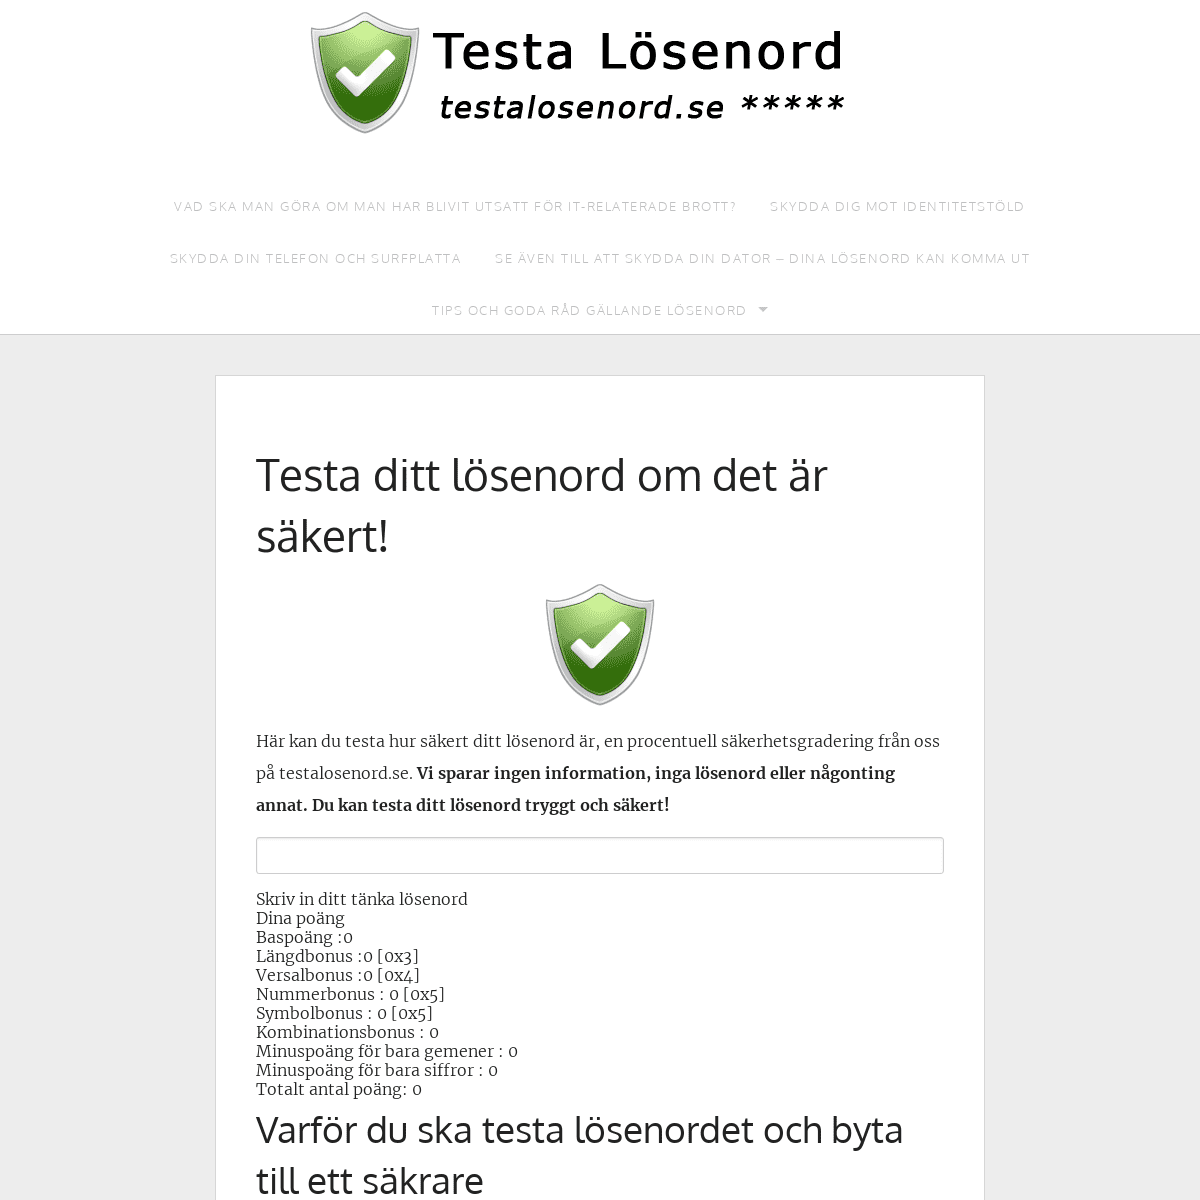 A complete backup of testalosenord.se